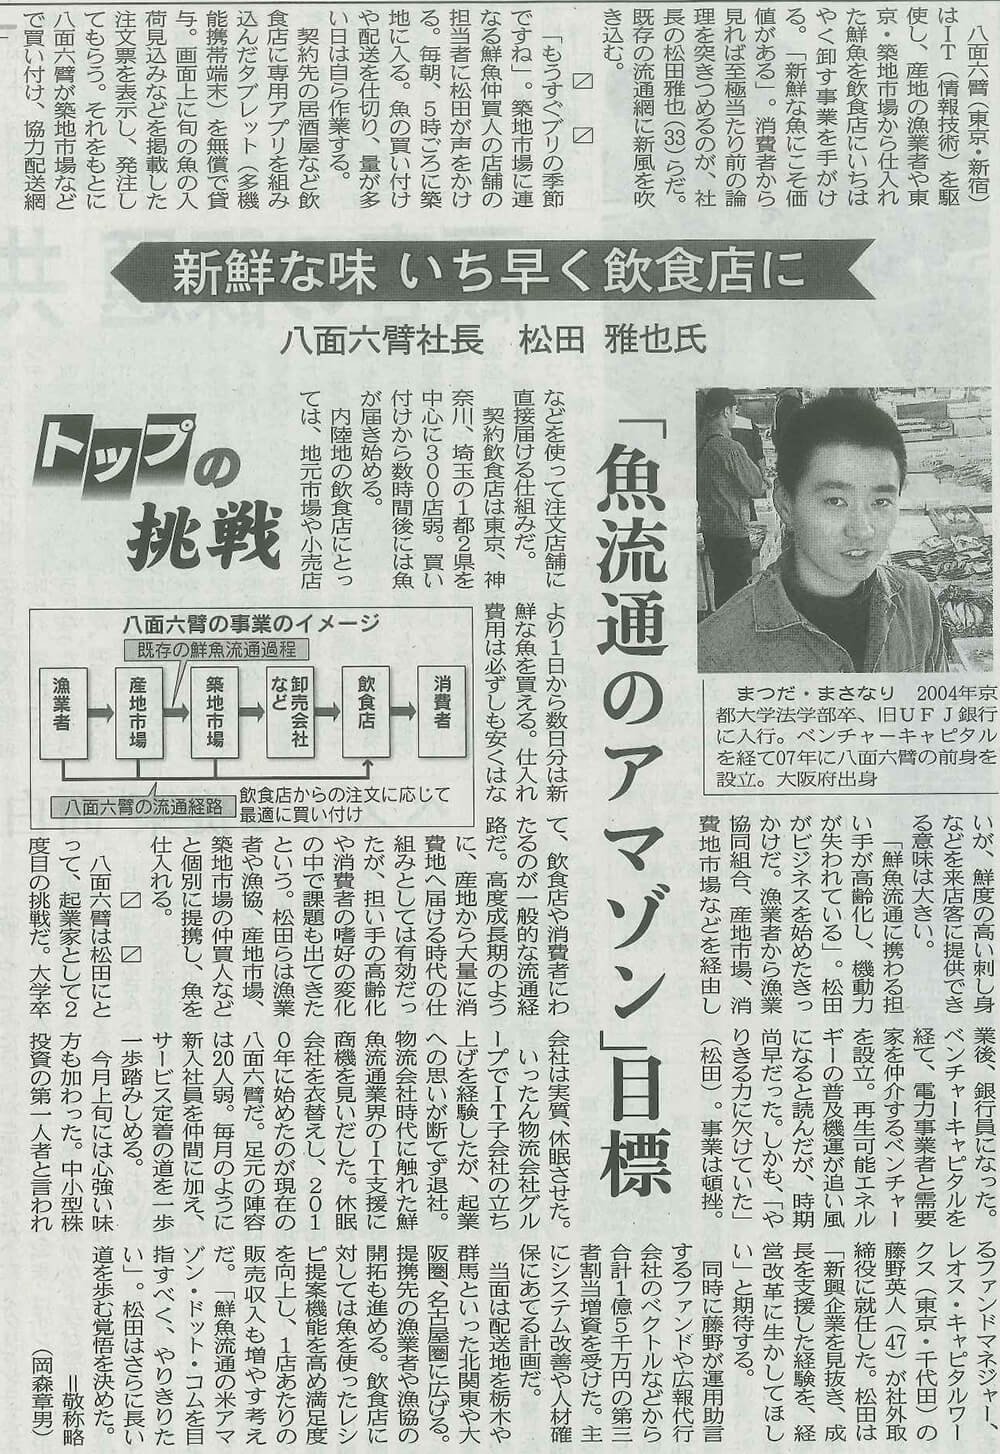 「日経産業新聞」に掲載されました。